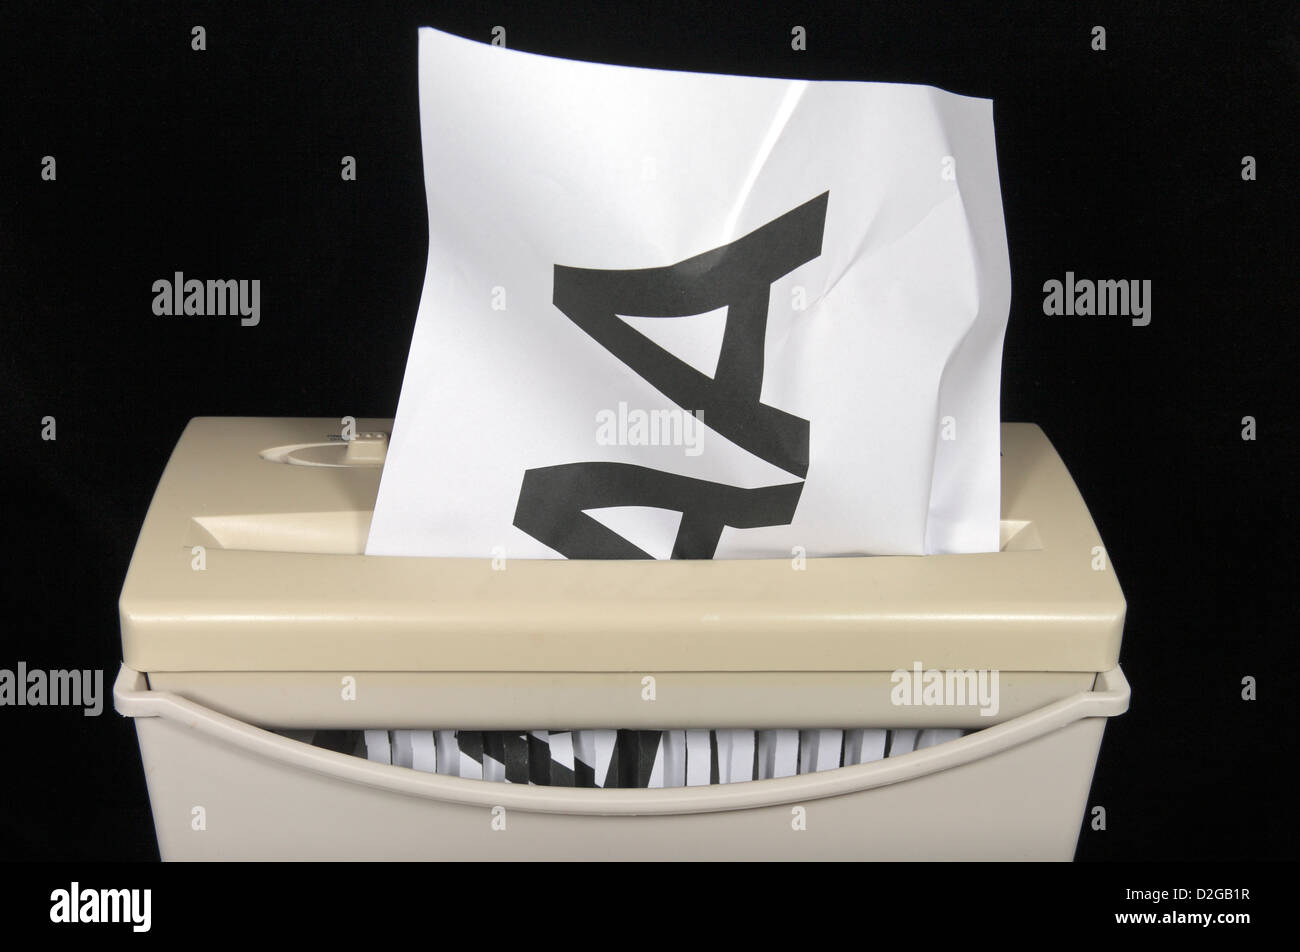 A AAA auf A4 Papier wird gedruckt, geschreddert, symbolisiert eine Herabstufung von der Bestnote AAA. Stockfoto